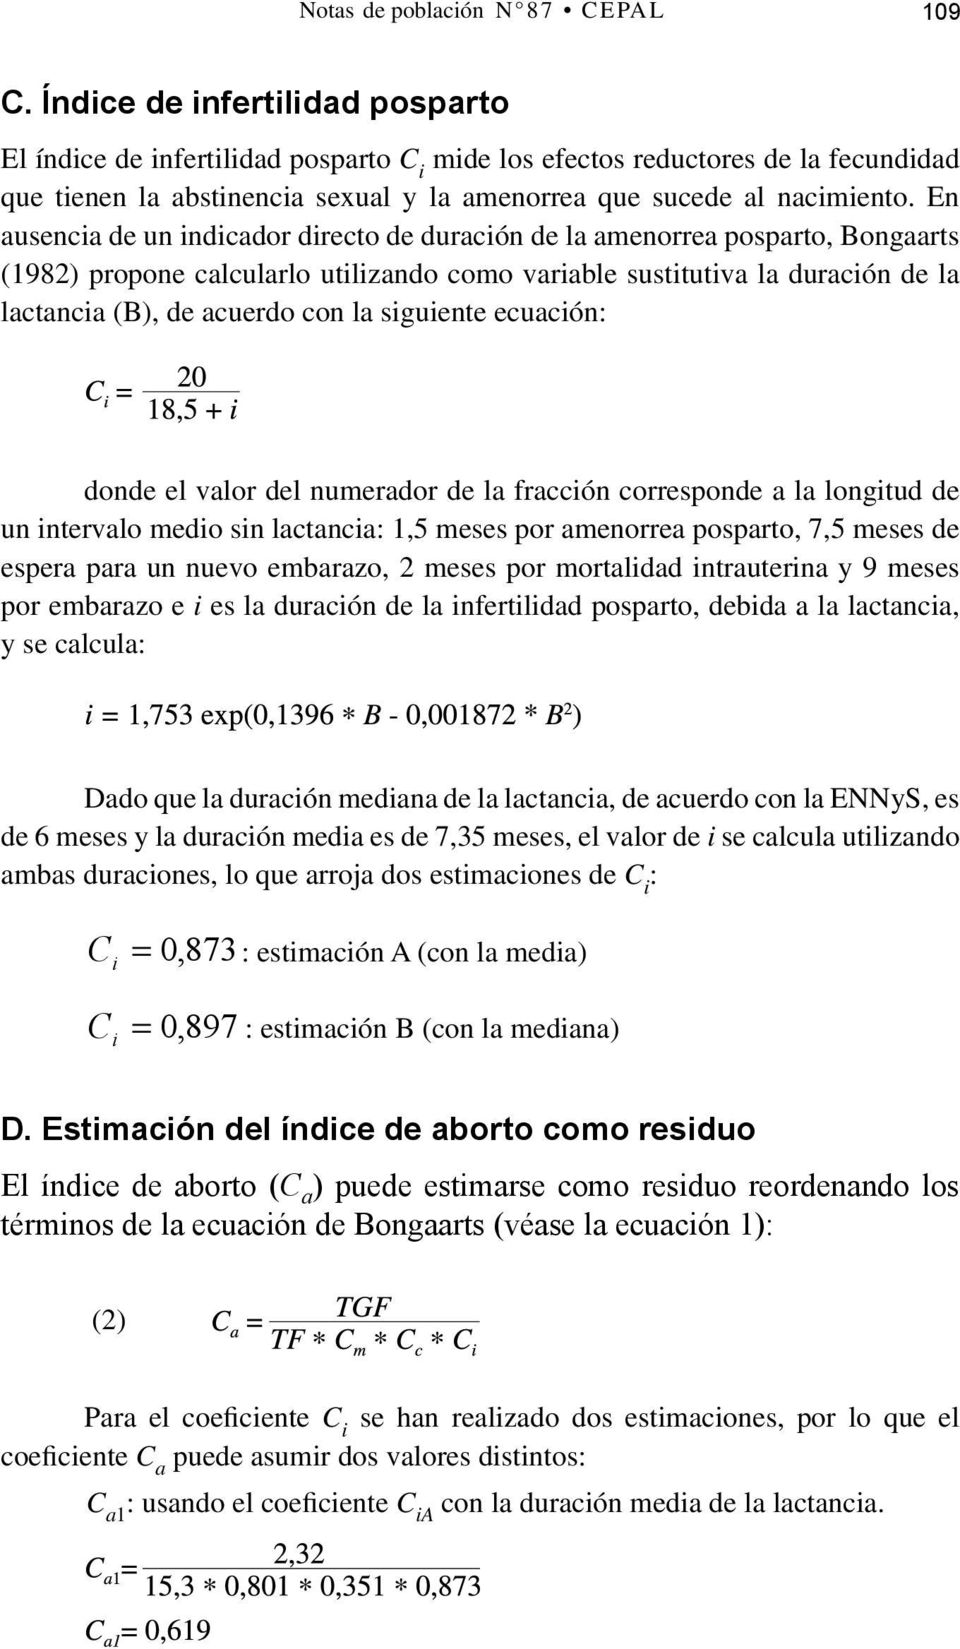 En ausencia de un indicador directo de duración de la amenorrea posparto, Bongaarts (1982) propone calcularlo utilizando como variable sustitutiva la duración de la lactancia (B), de acuerdo con la